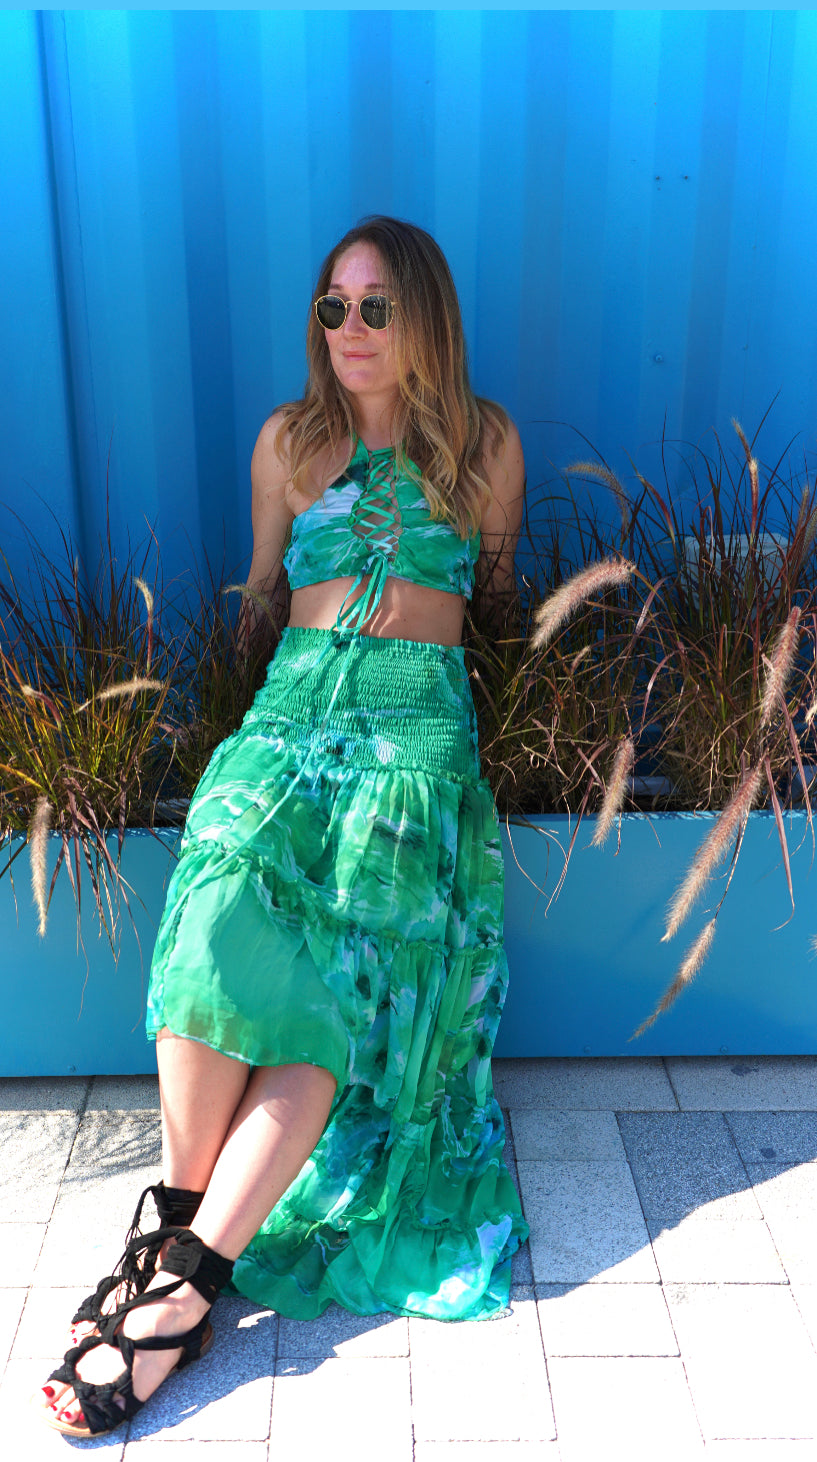 Green goddess tube dress/skirt